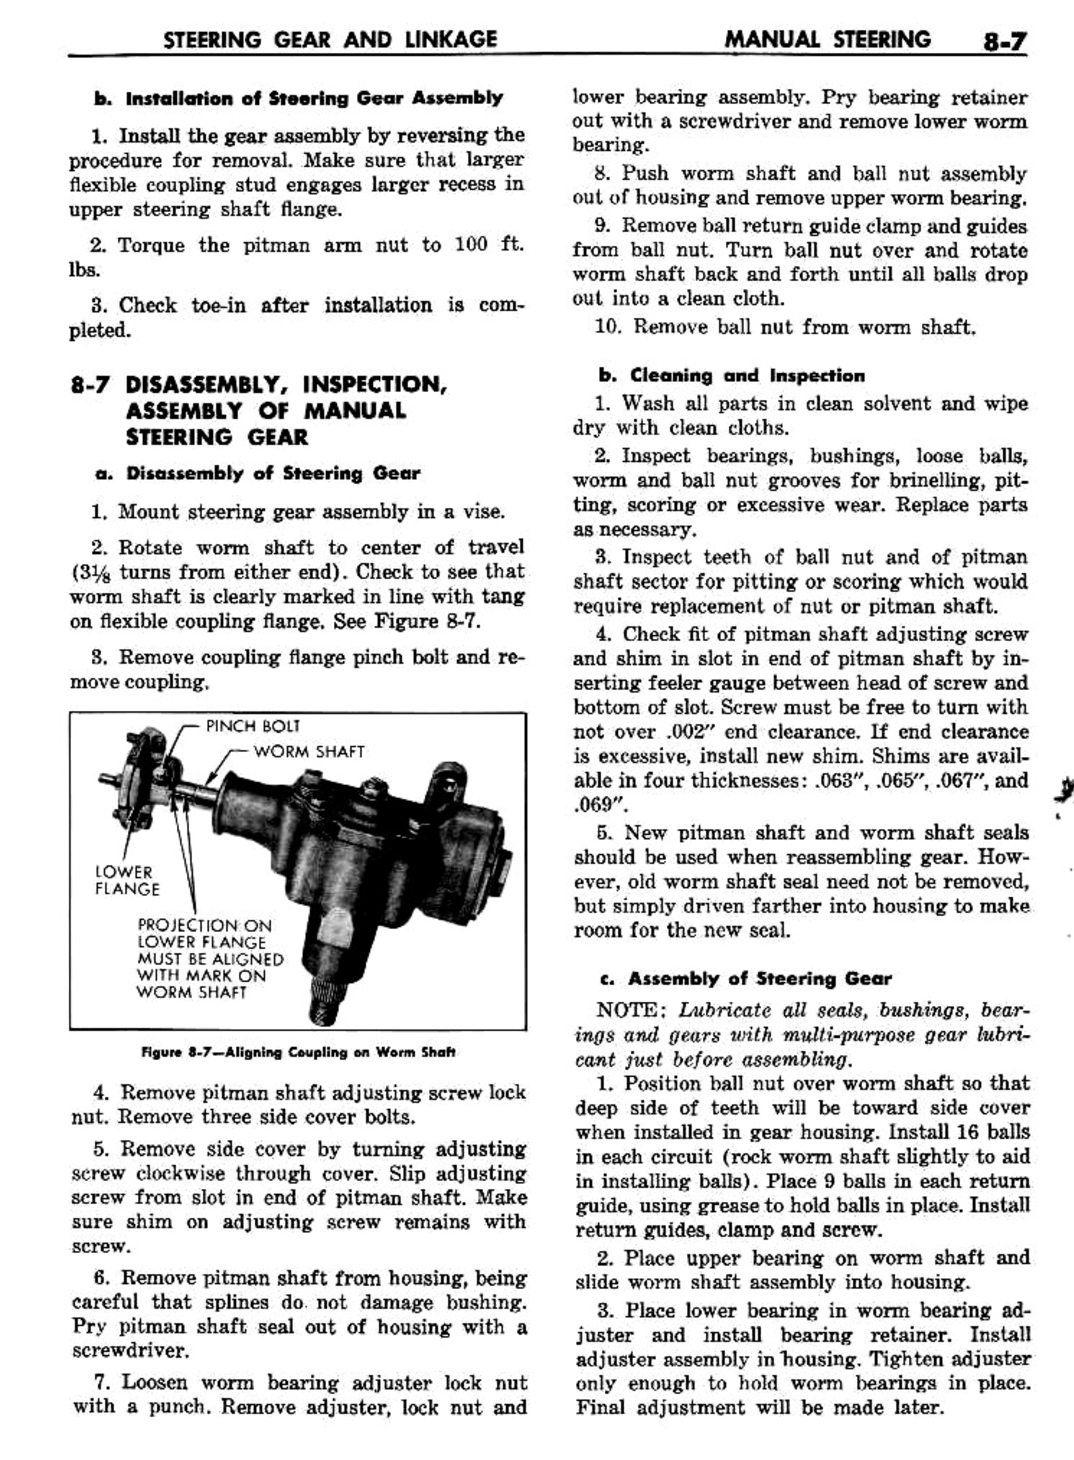 n_09 1960 Buick Shop Manual - Steering-007-007.jpg